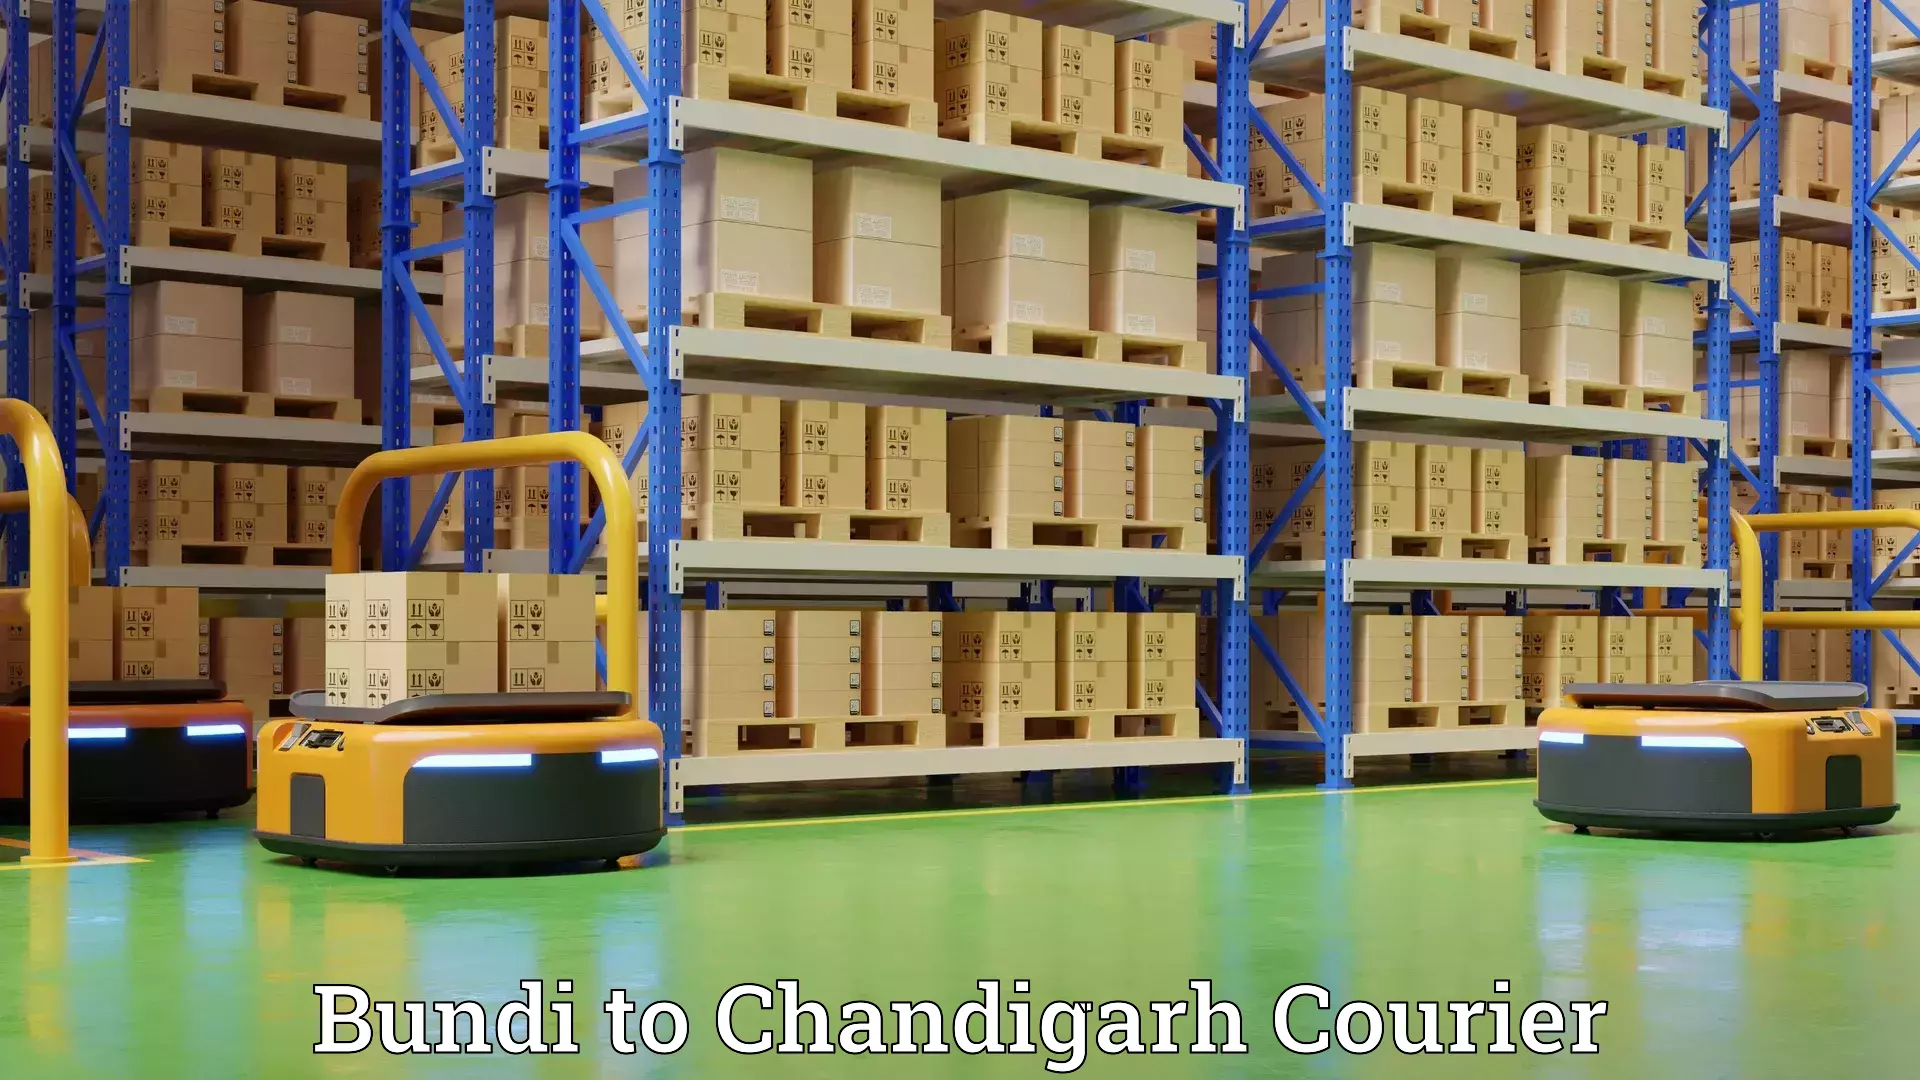 Professional moving company Bundi to Chandigarh